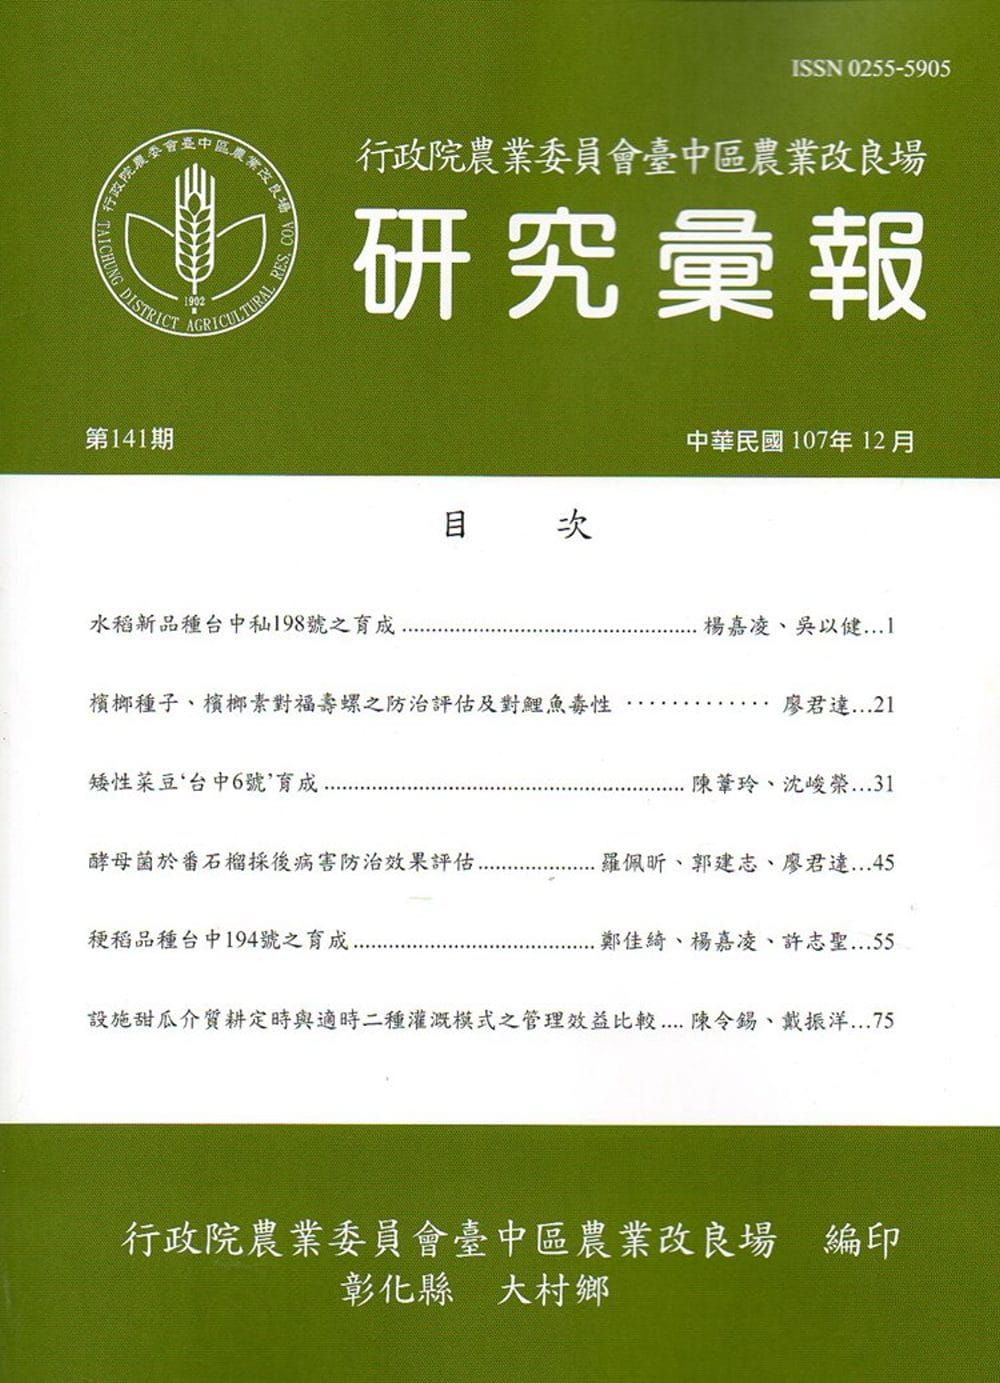 研究彙報141期(107/12)行政院農業委員會臺中區農業改良場